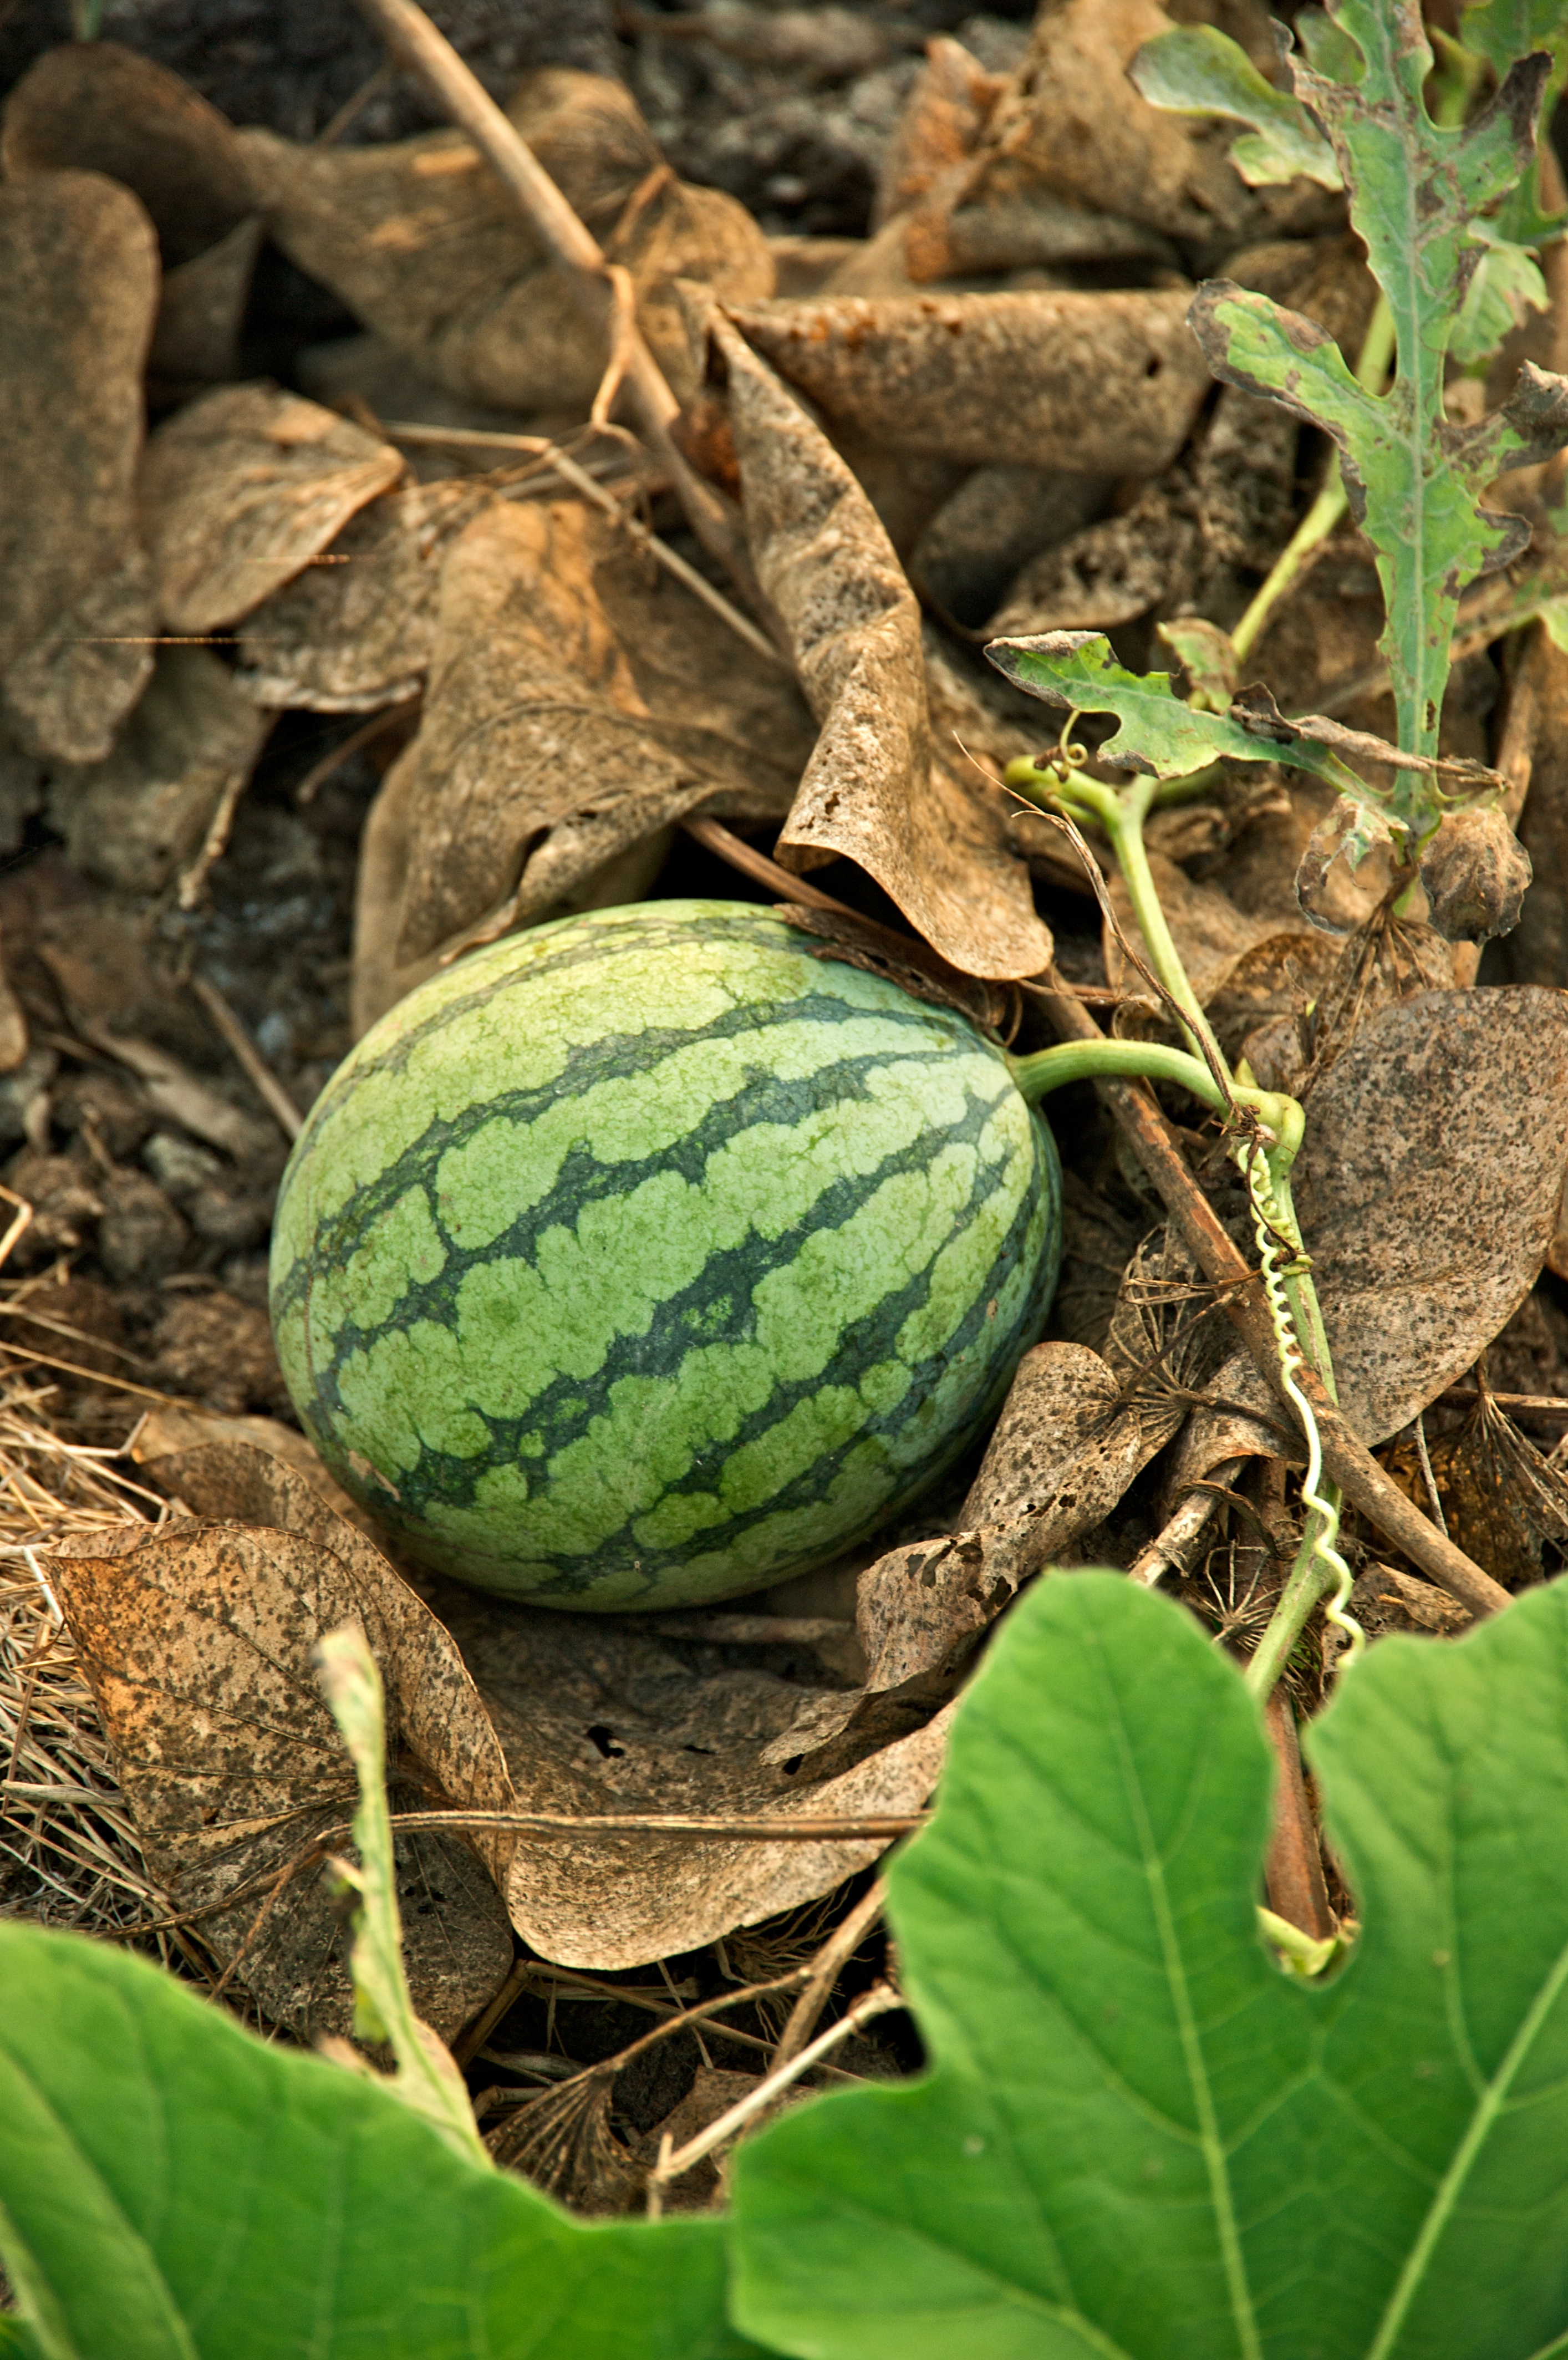 akbar panjwani add young ripe melons 2 photo